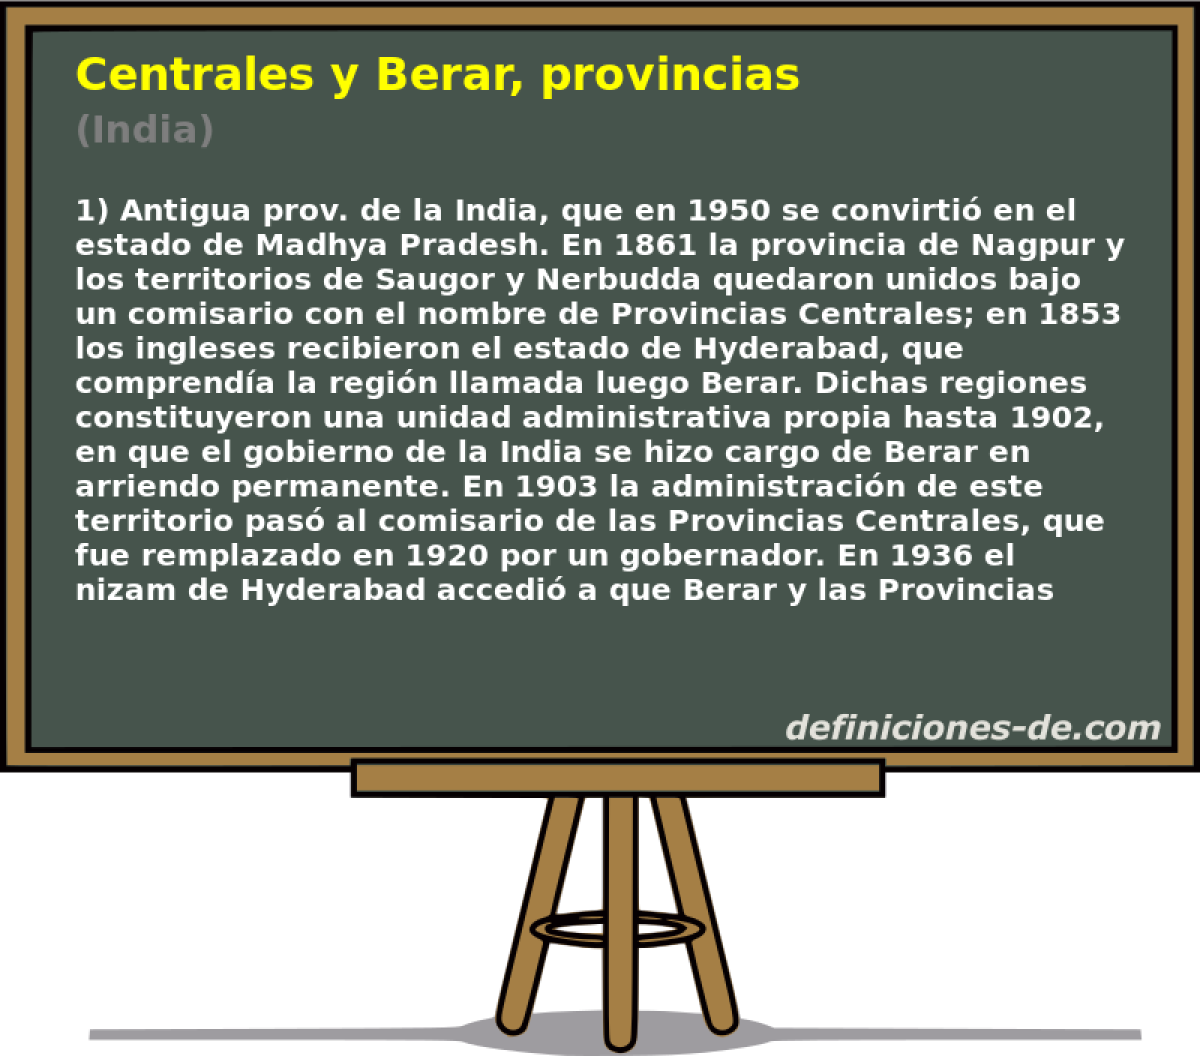 Centrales y Berar, provincias (India)